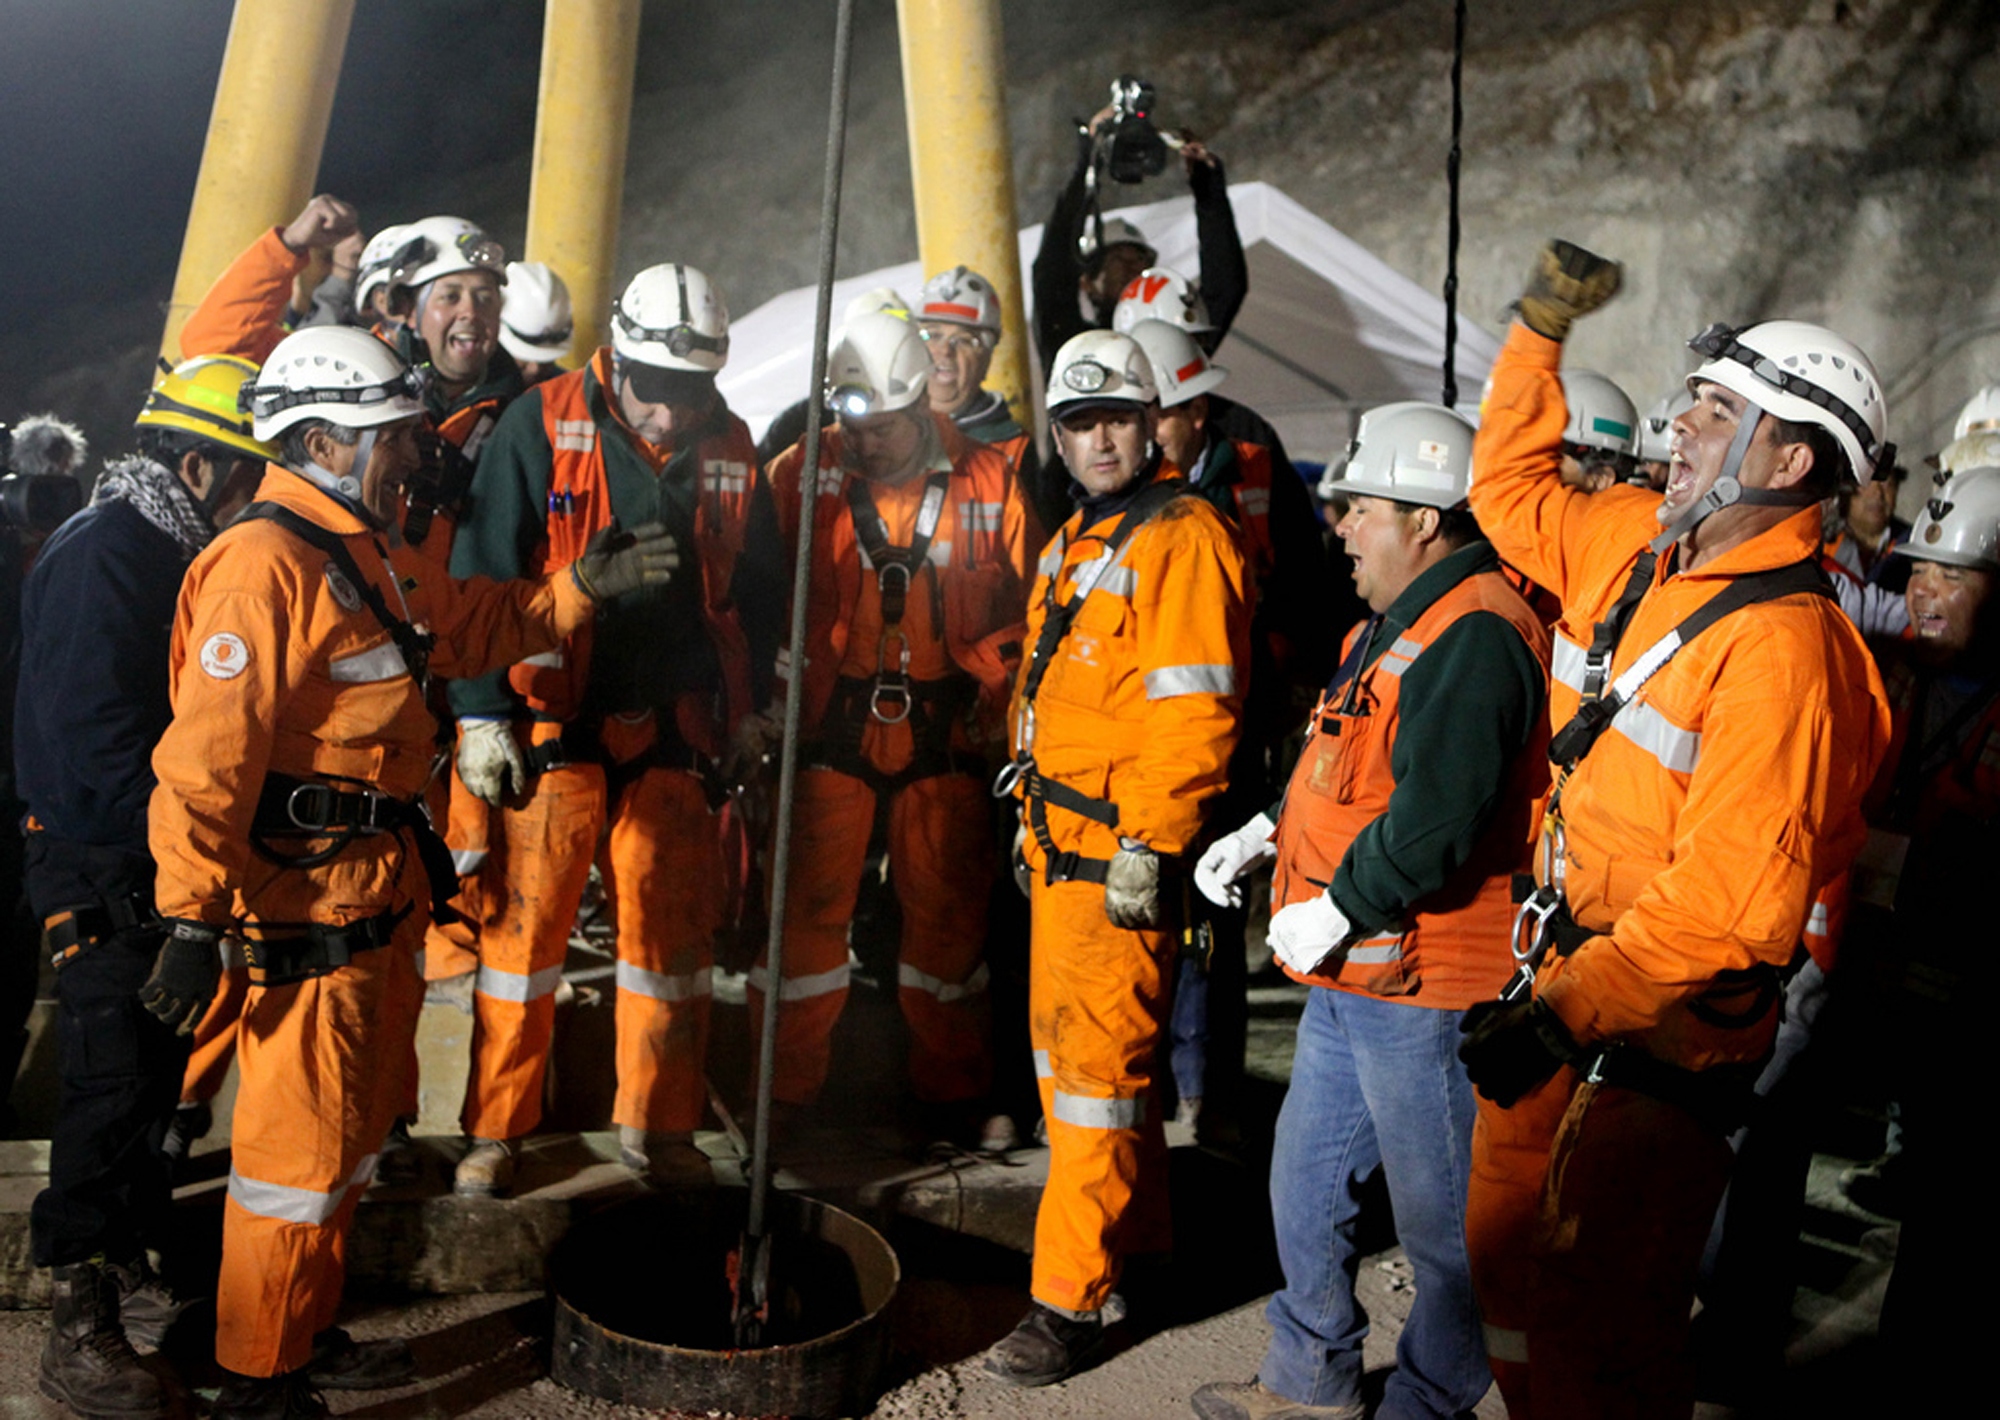 Inte ens ett dygn efter att San José-gruvans arbetare räddats var det dags för nästa olycka i Chile. En 26-årig gruvarbetare omkom i staden Petorca - 500 kilometer från San José-gruvan.